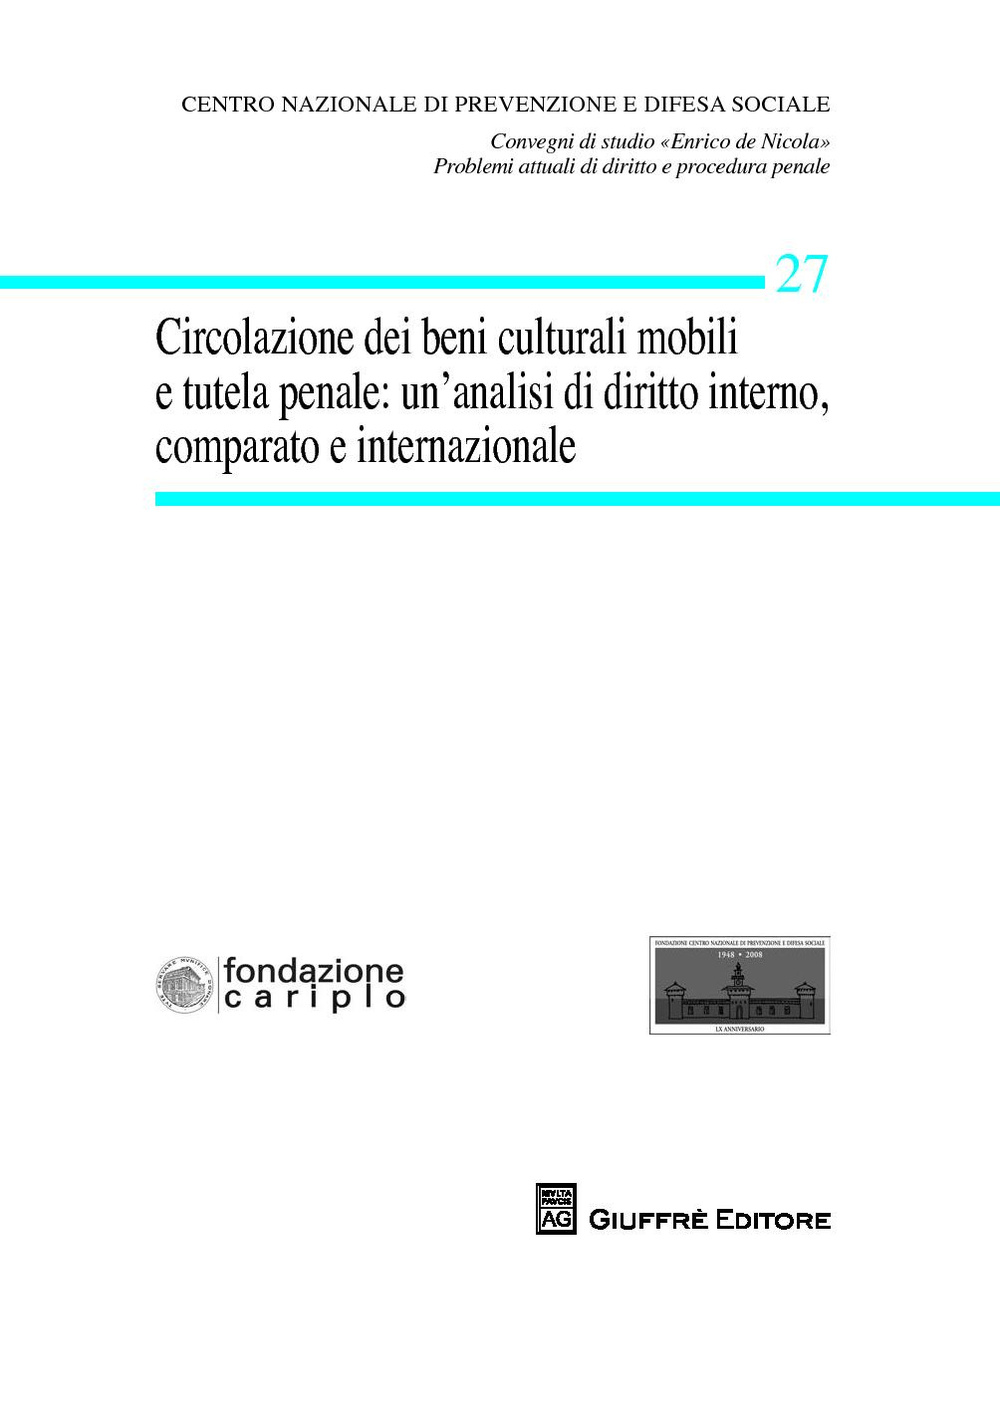 Circolazione dei beni culturali mobili e tutela penale. Un'analisi di diritto interno, comparato ed internazionale